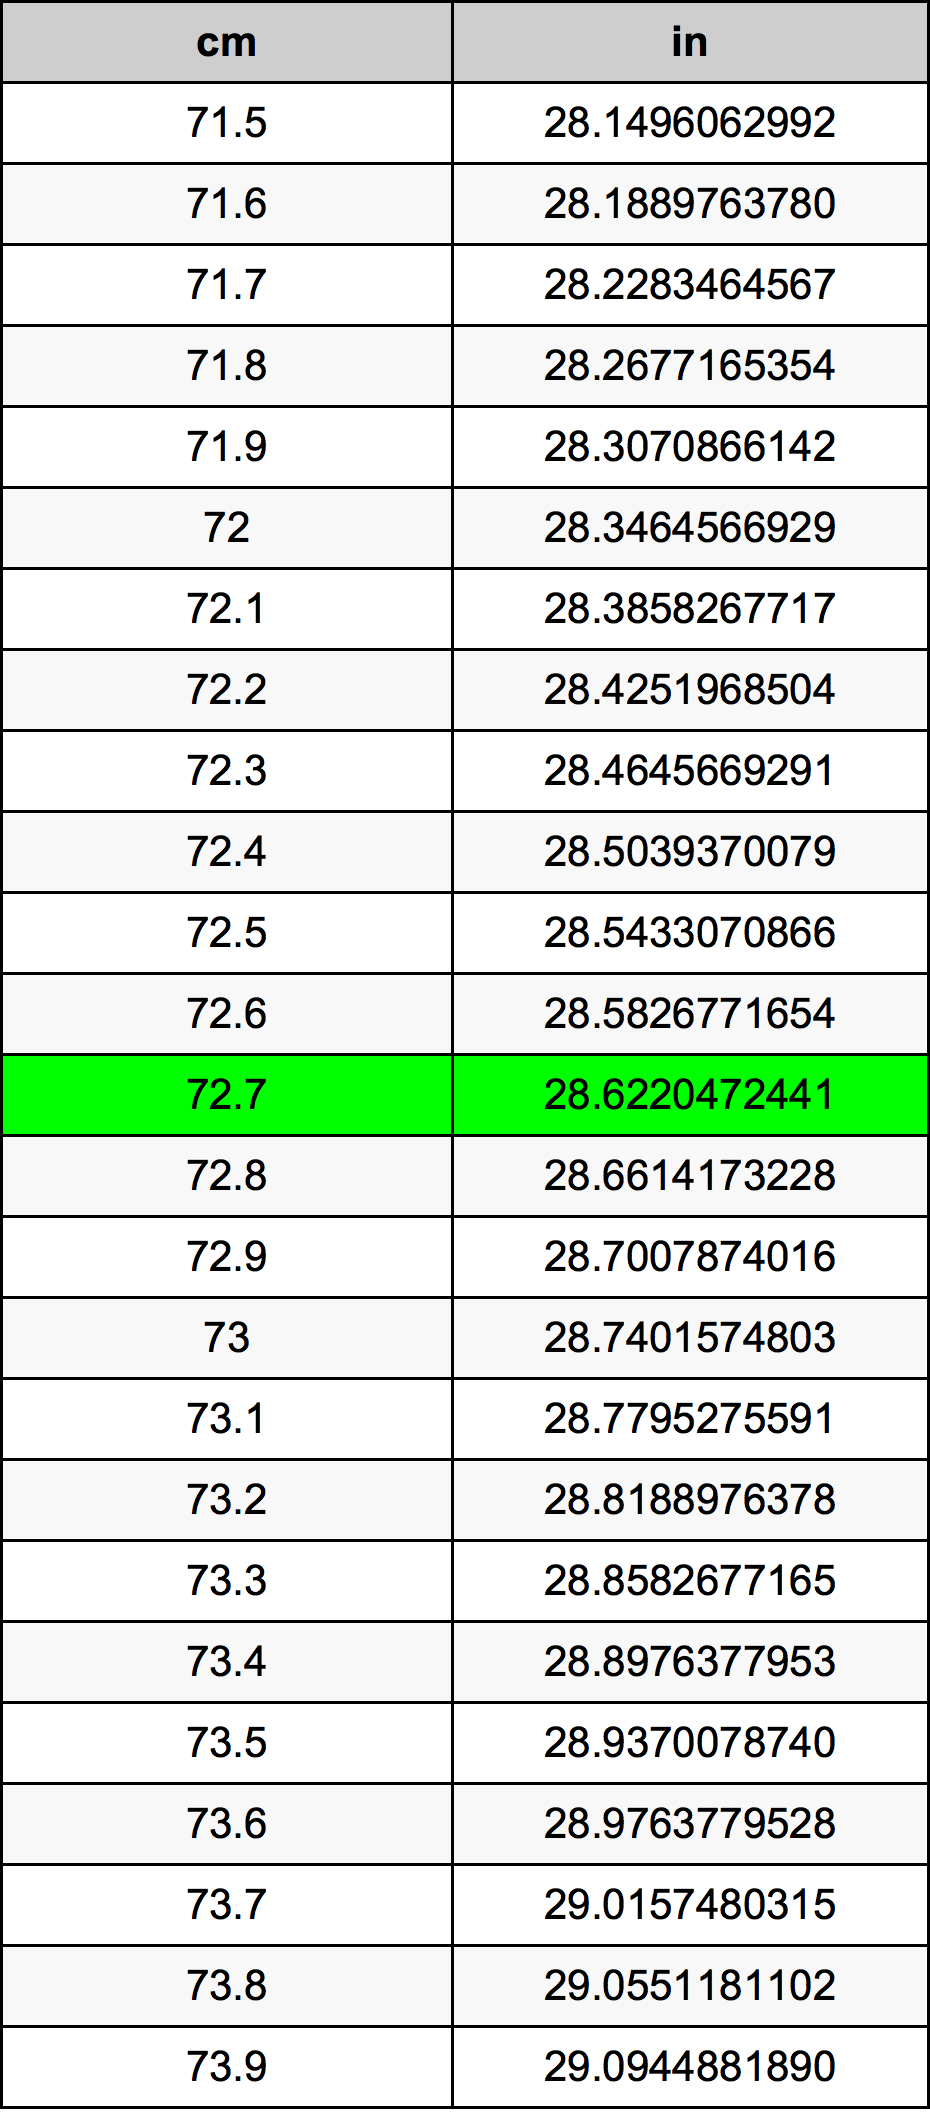 72.7 Centiméter átszámítási táblázat